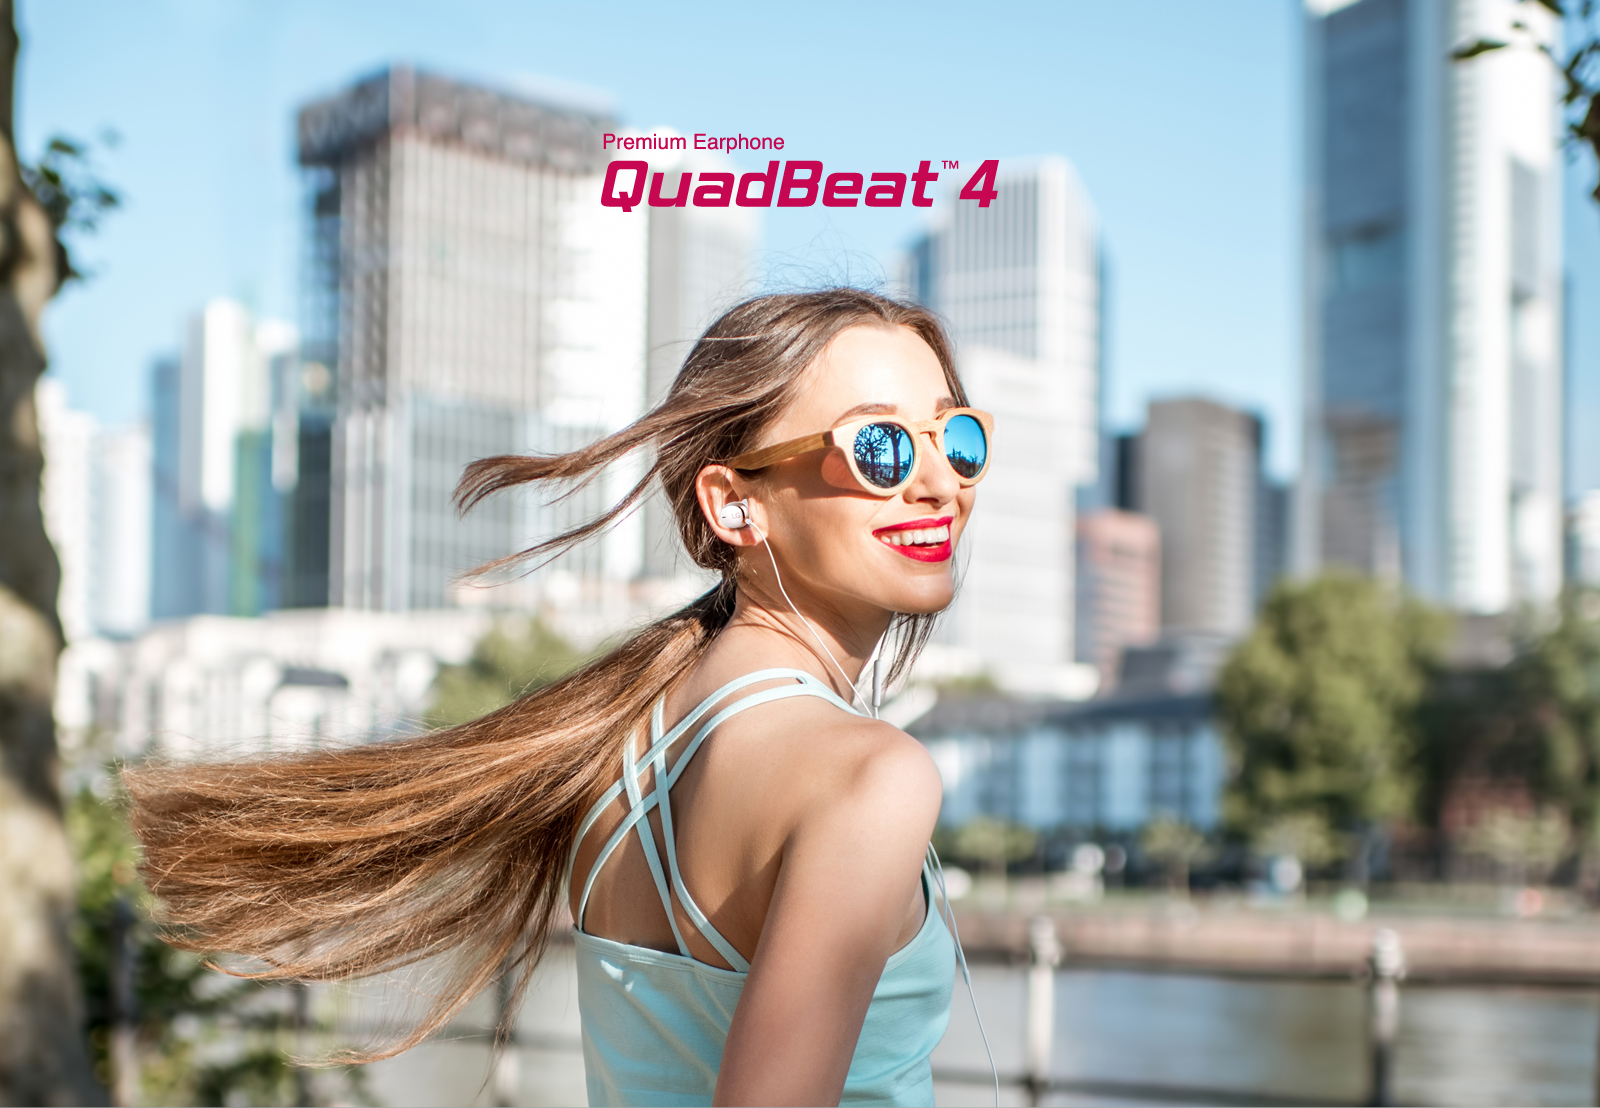 Premium Earphone QuadBeat 4